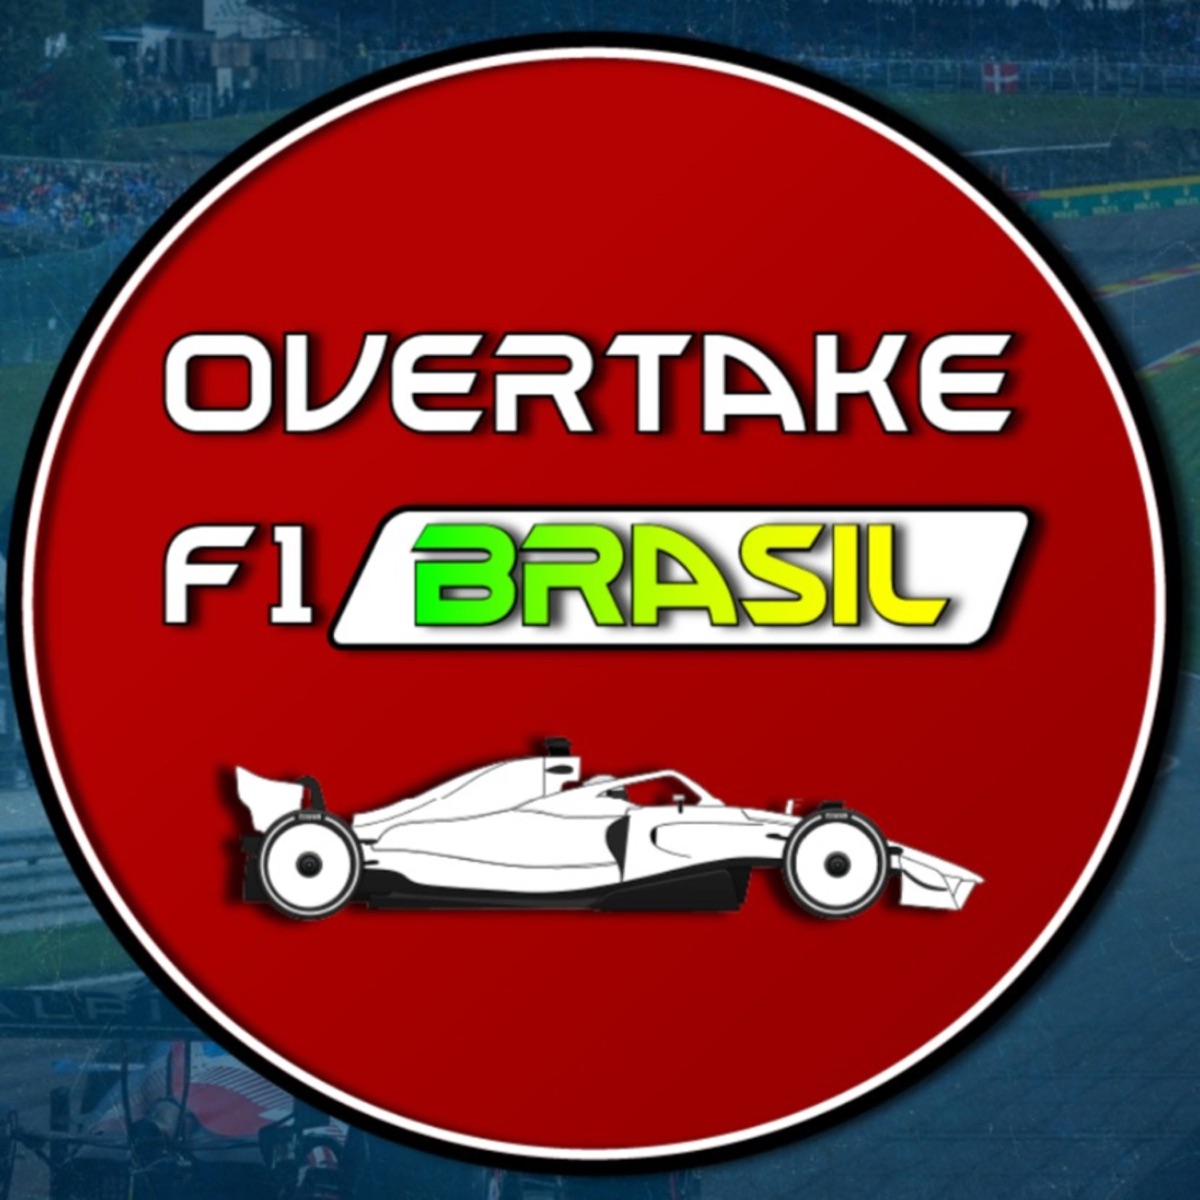 GP Portugal de F1: Alguns carros do Open de Velocidade devem correr